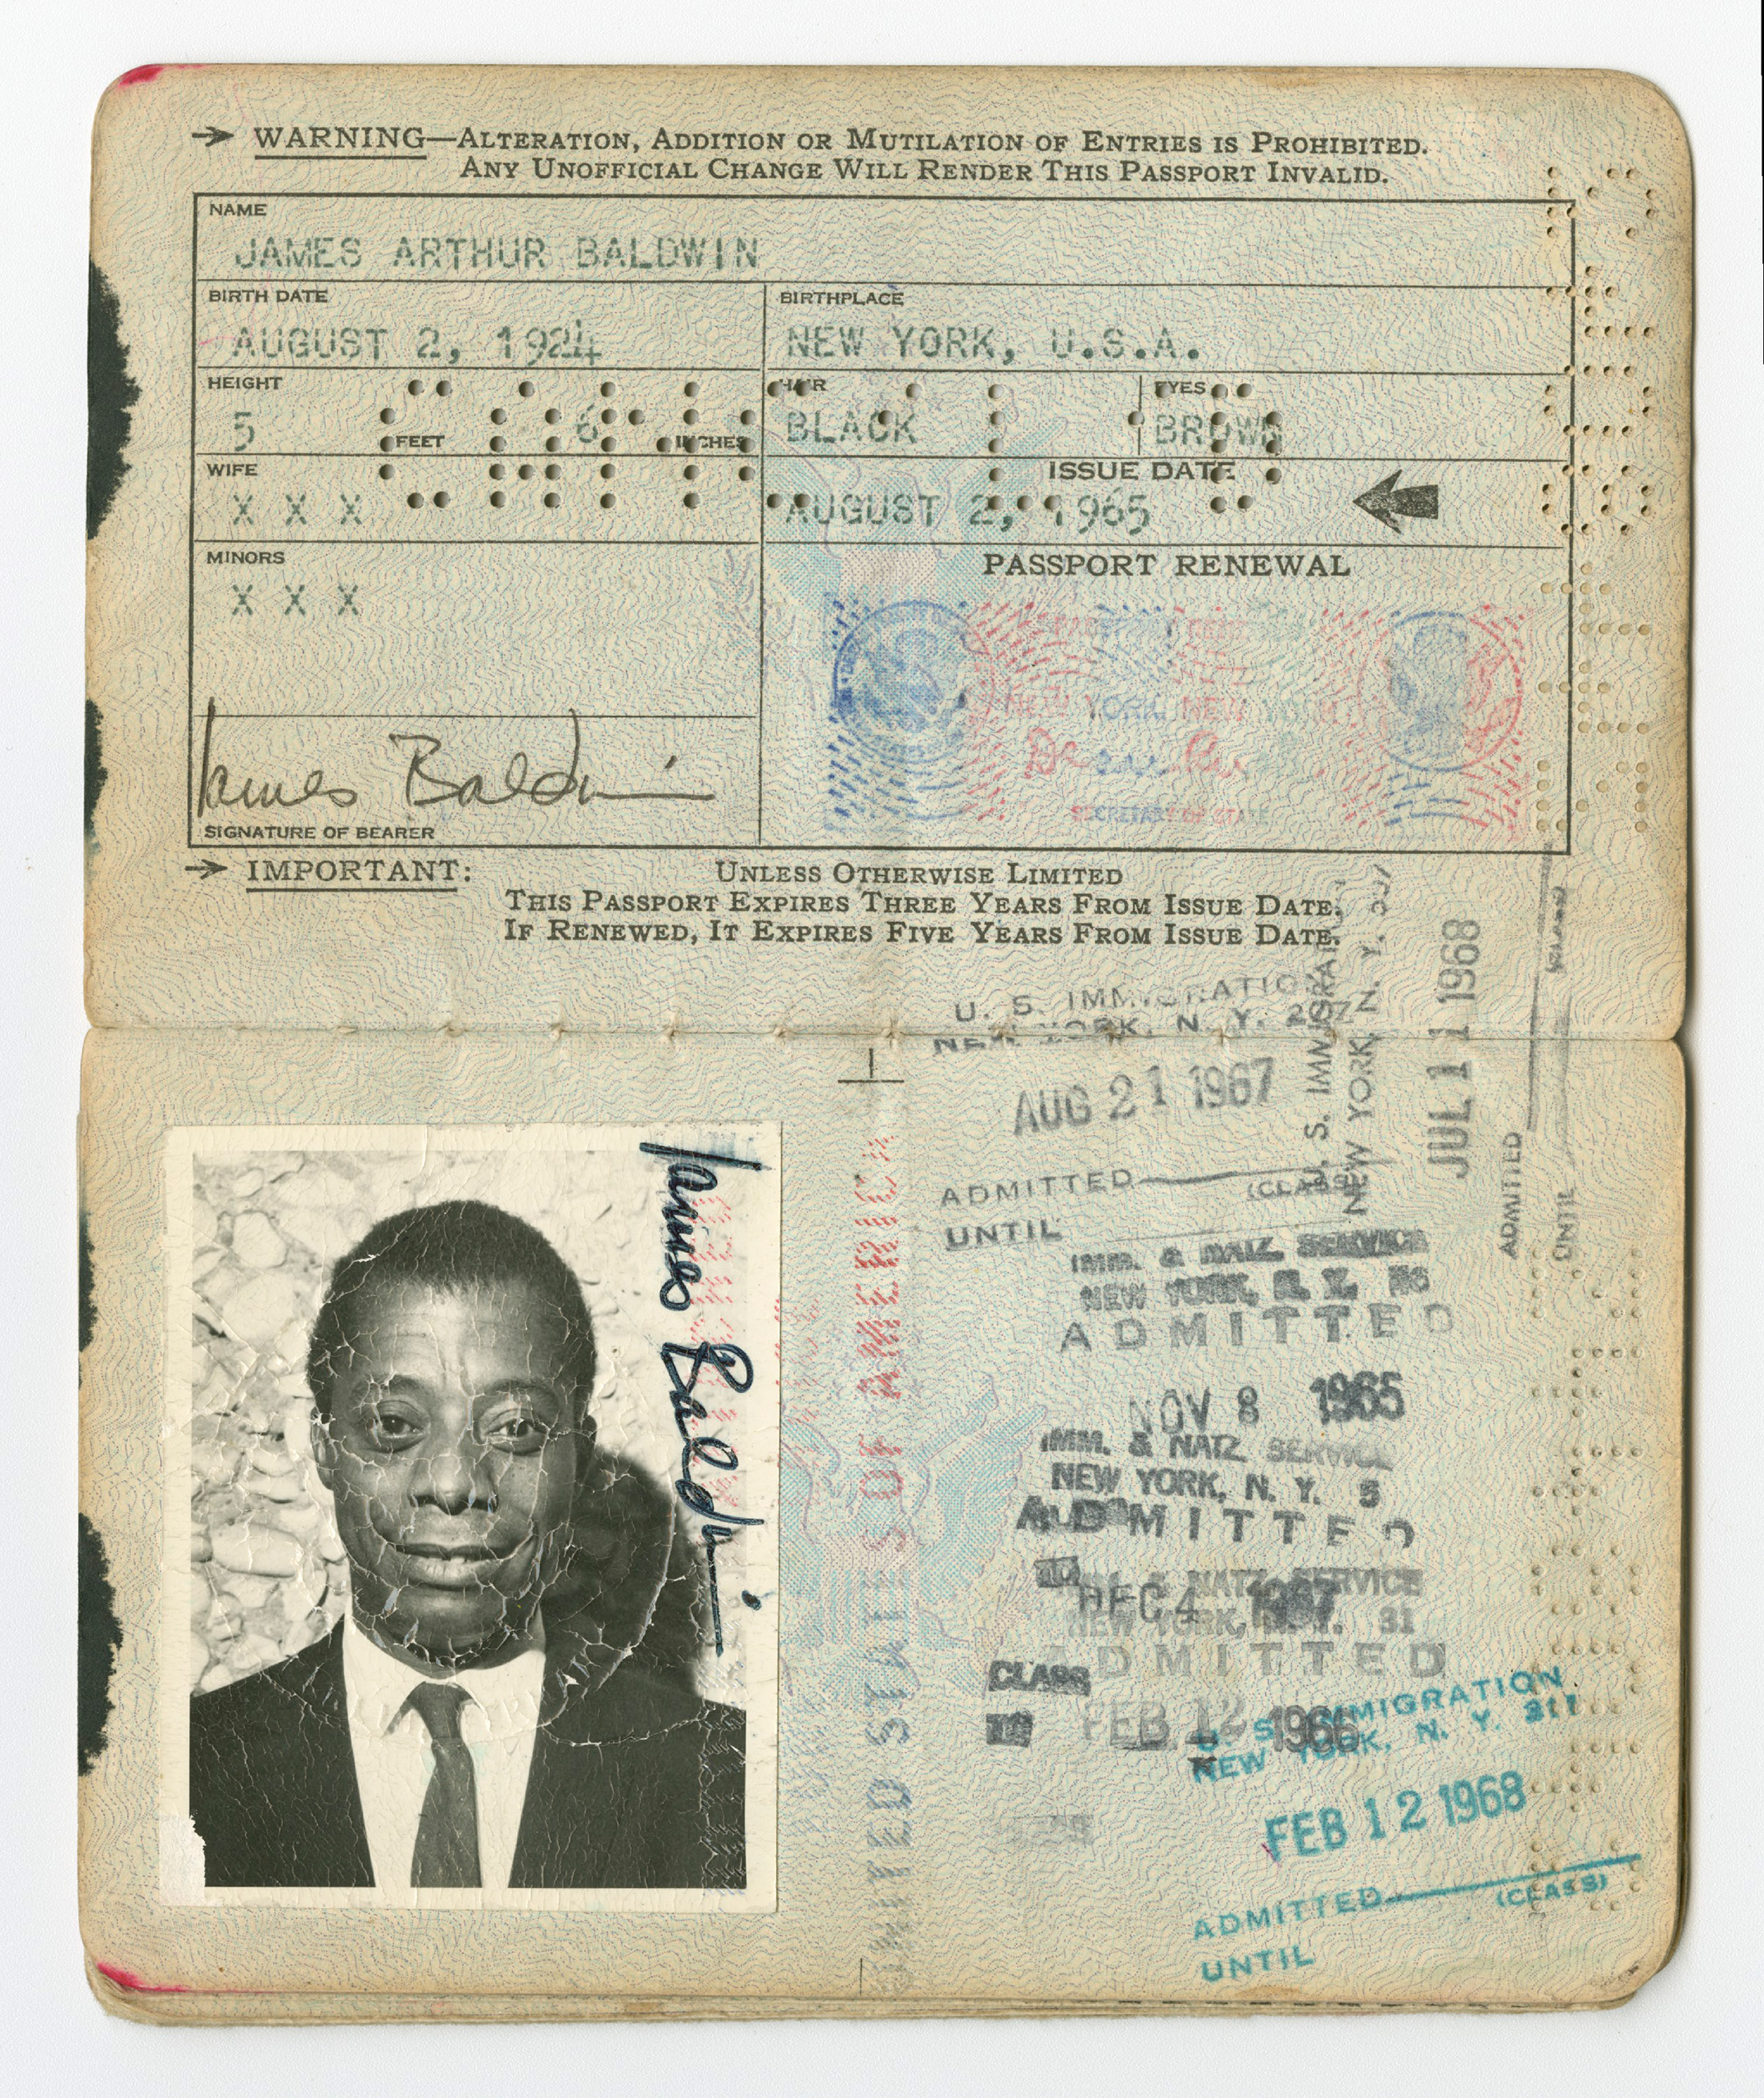 Passport belong to James Baldwin.